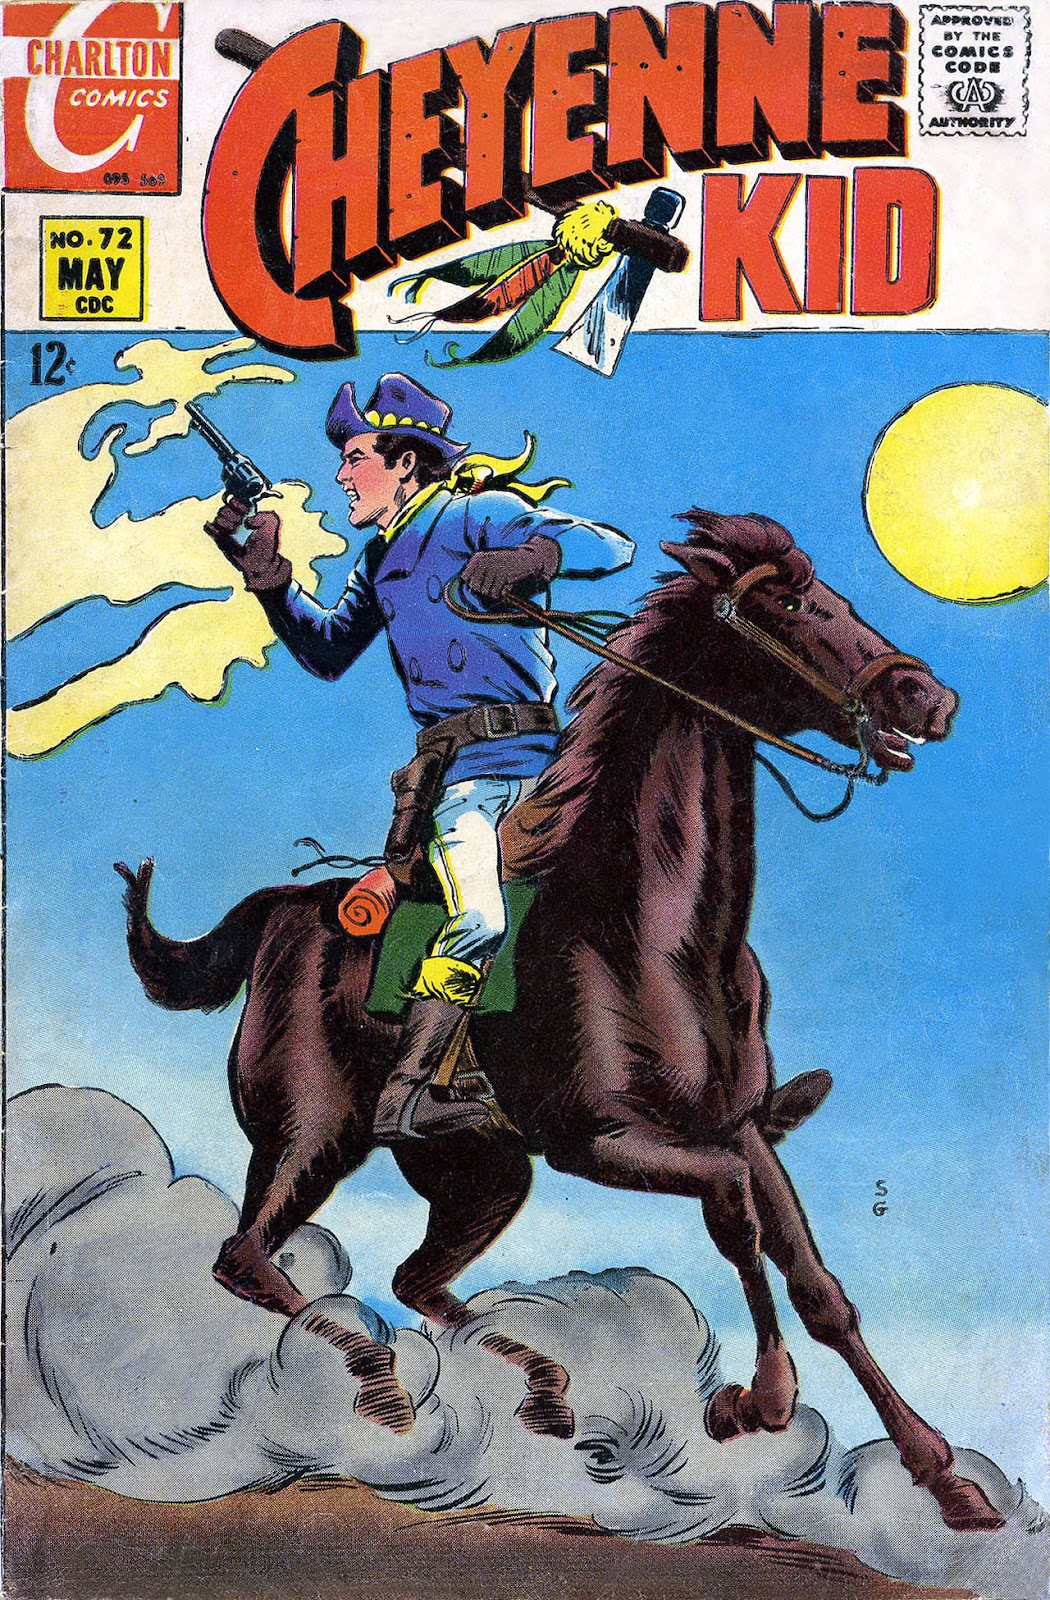 Cheyenne Kid issue 72 - Page 1